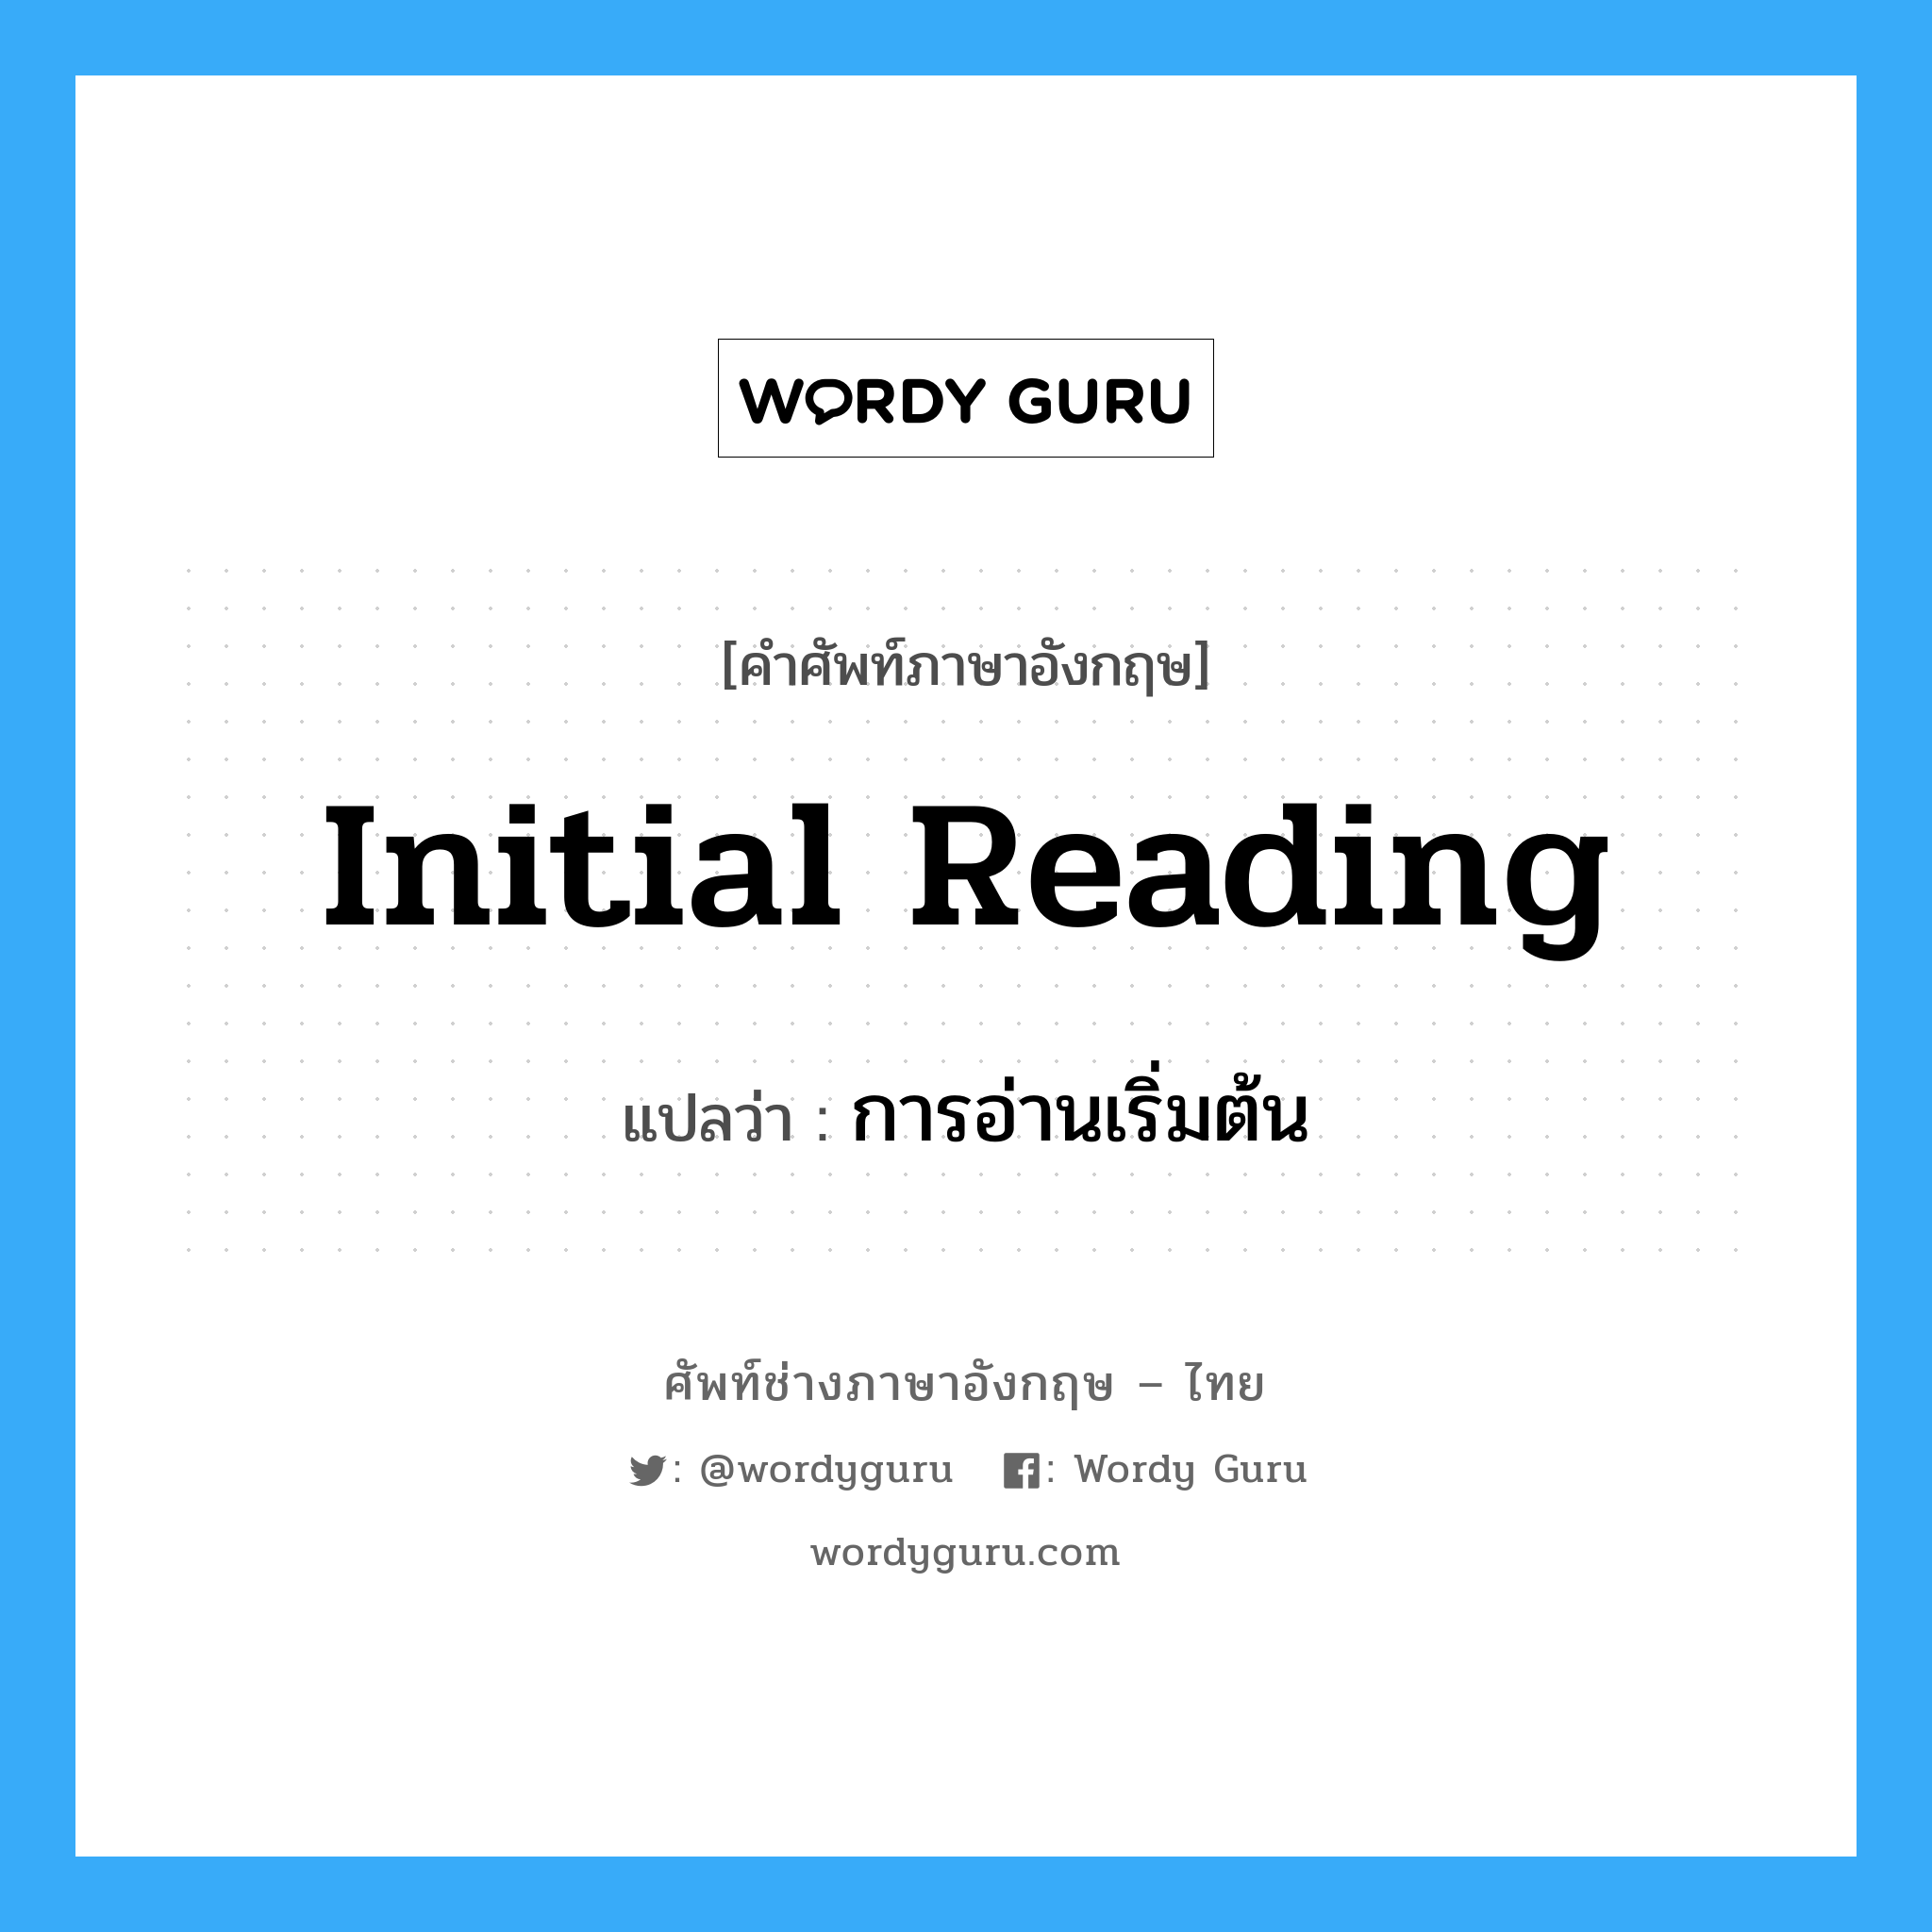 การอ่านเริ่มต้น ภาษาอังกฤษ?, คำศัพท์ช่างภาษาอังกฤษ - ไทย การอ่านเริ่มต้น คำศัพท์ภาษาอังกฤษ การอ่านเริ่มต้น แปลว่า initial reading